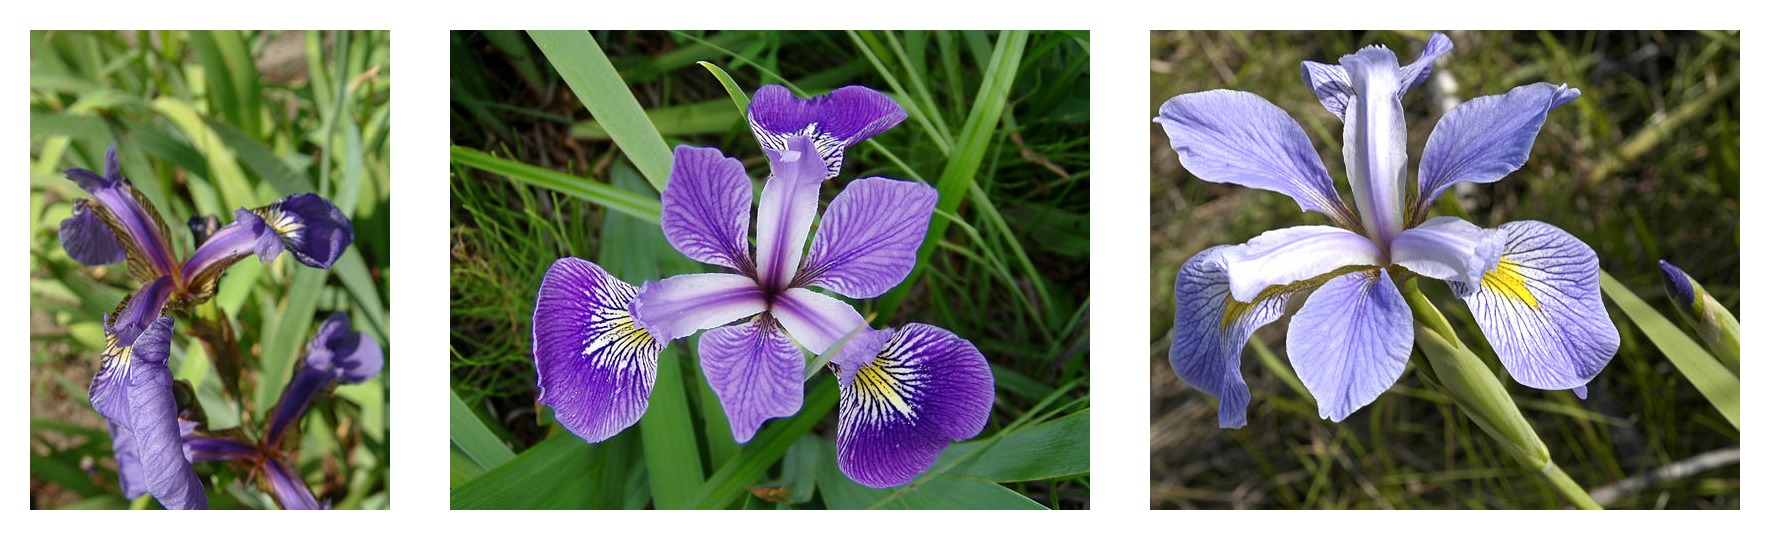 3 つのアヤメ種の花びらの形状の比較: Iris setosa、Iris virginica、Iris versicolor